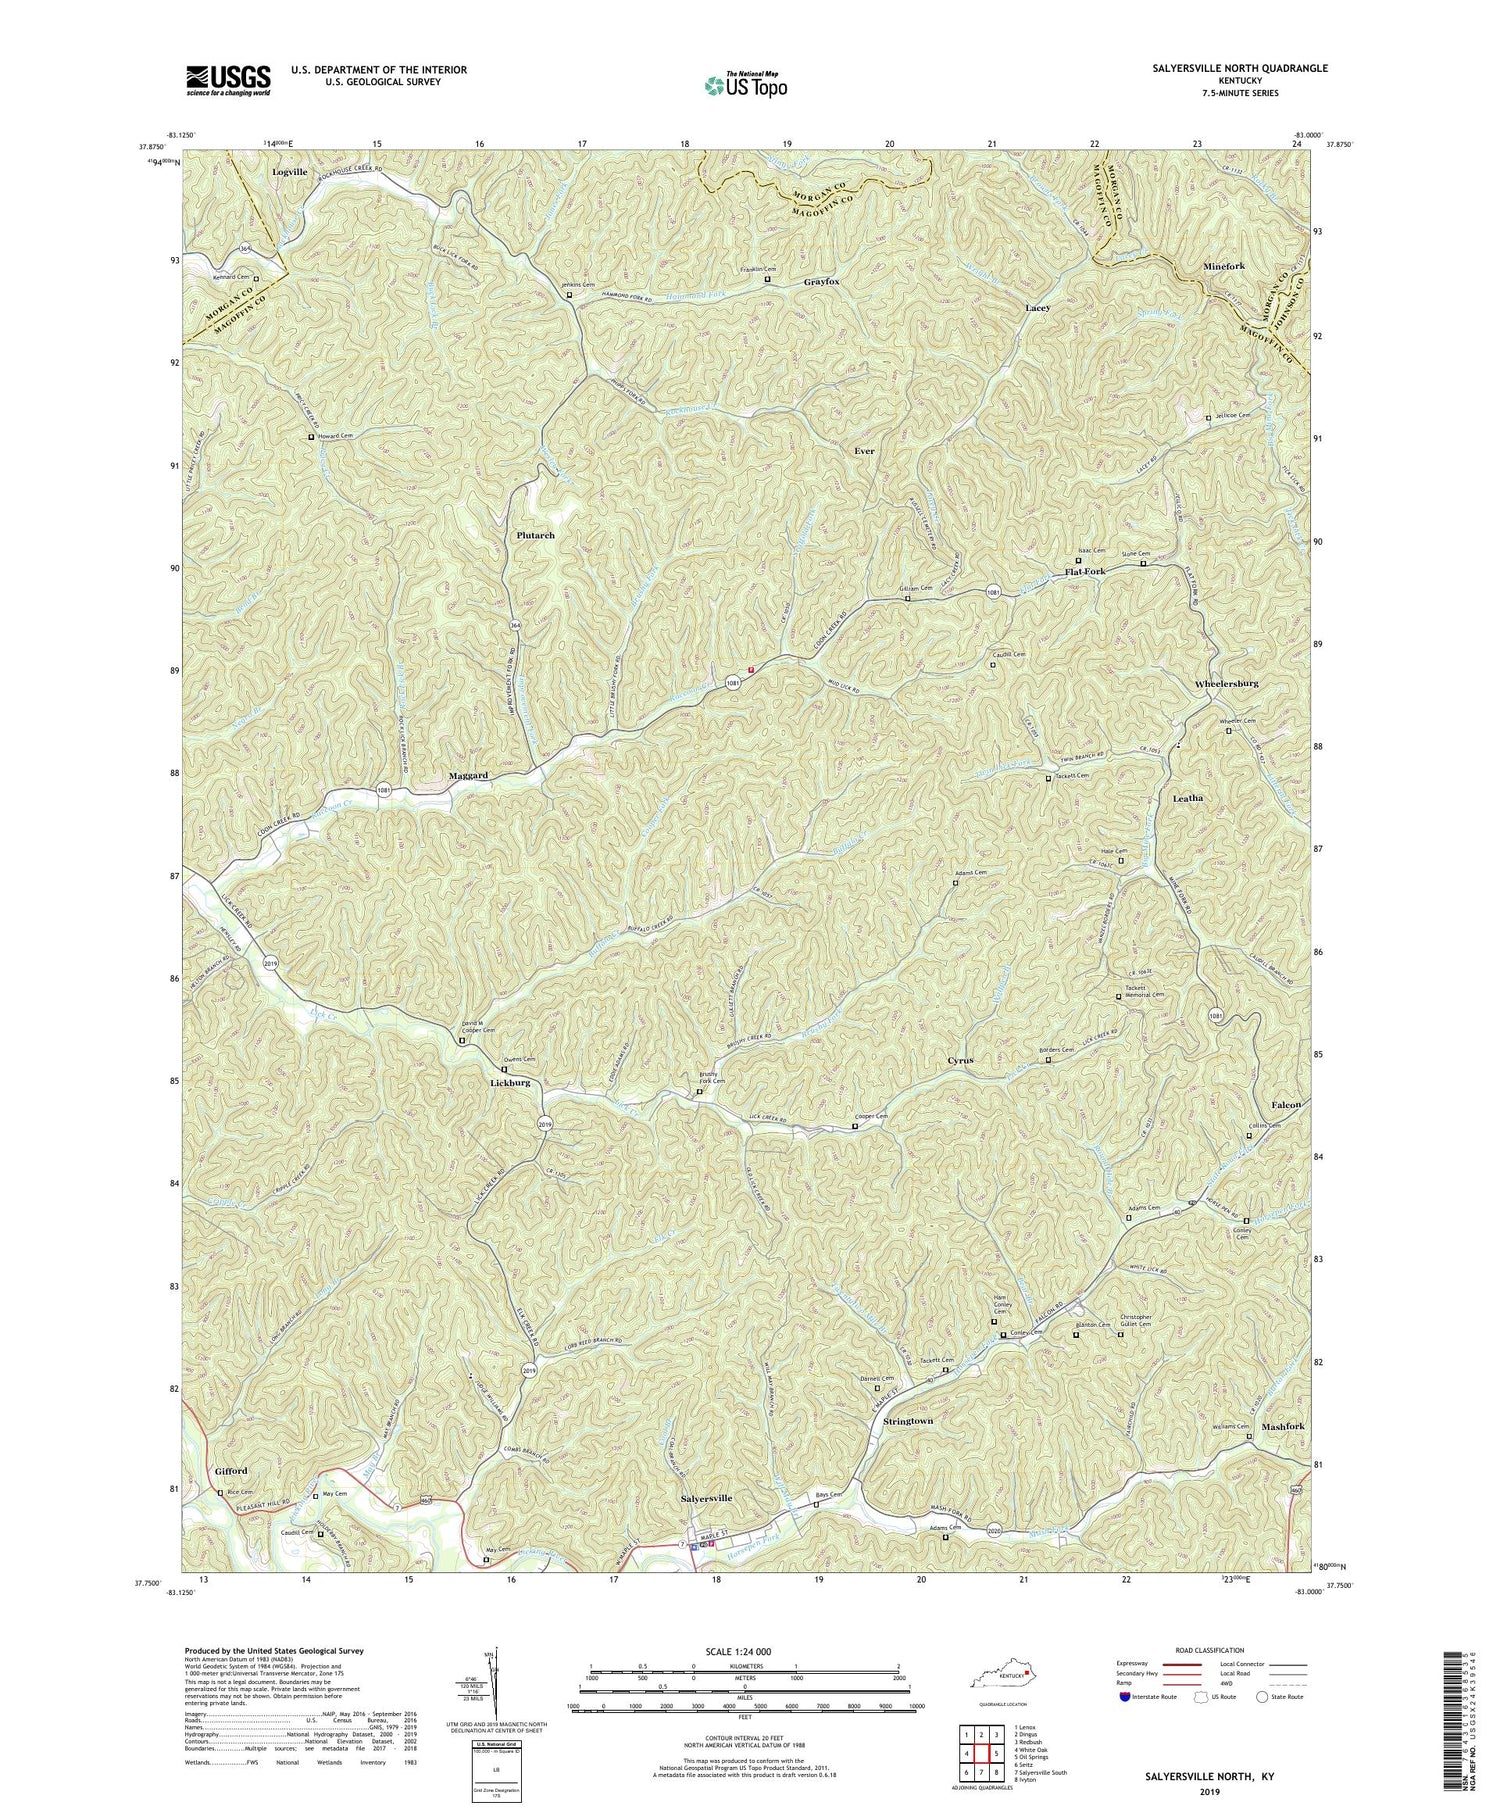 Salyersville North Kentucky US Topo Map Image